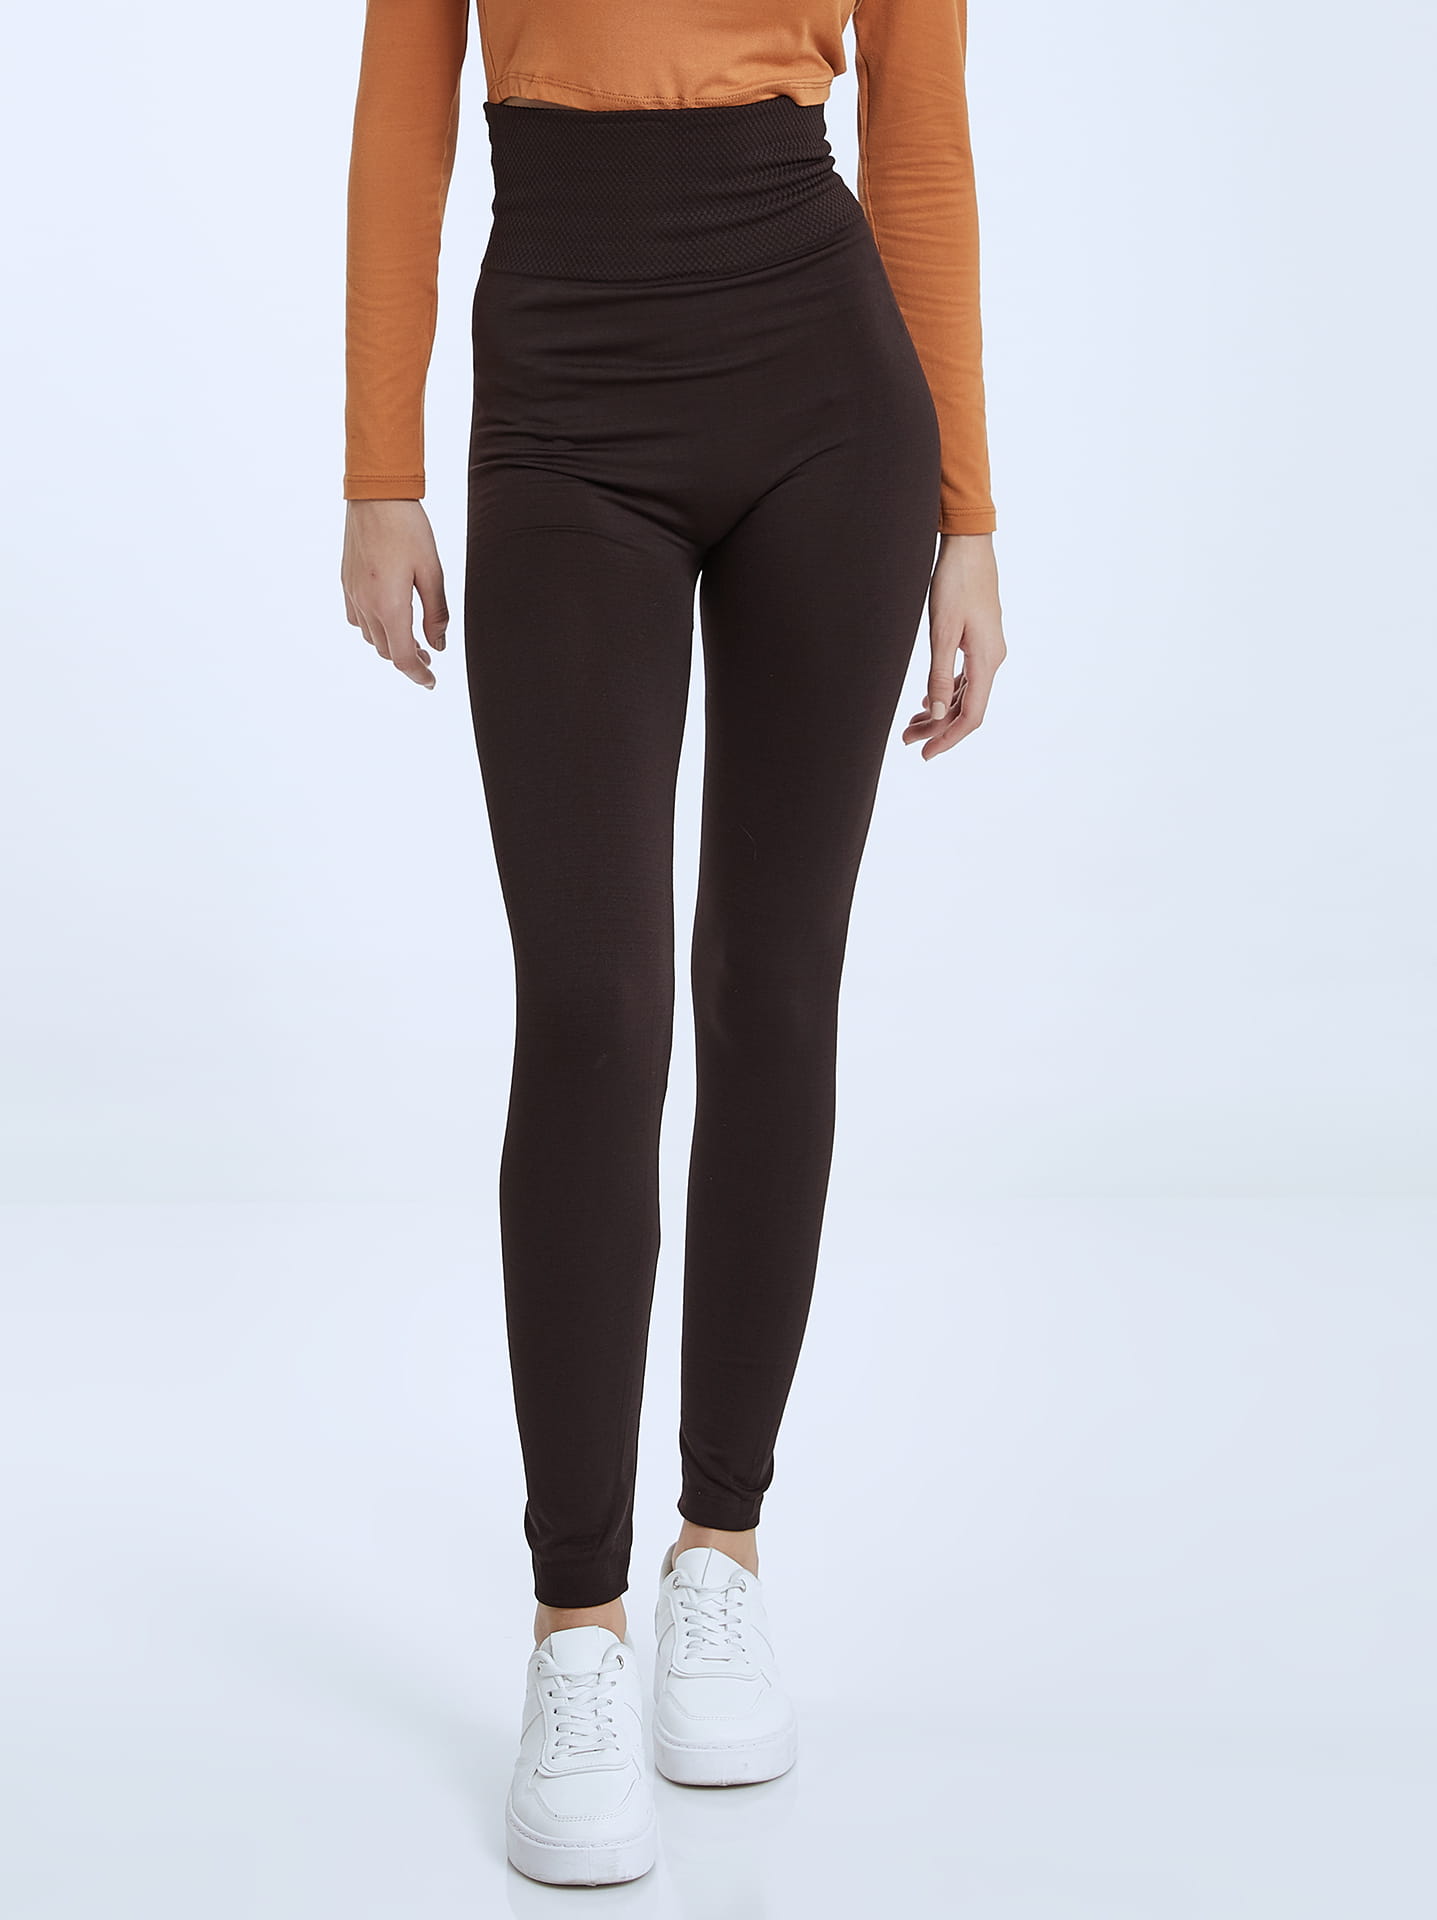 Elastic thermal leggings in dark brown, 6.99€ | Celestino